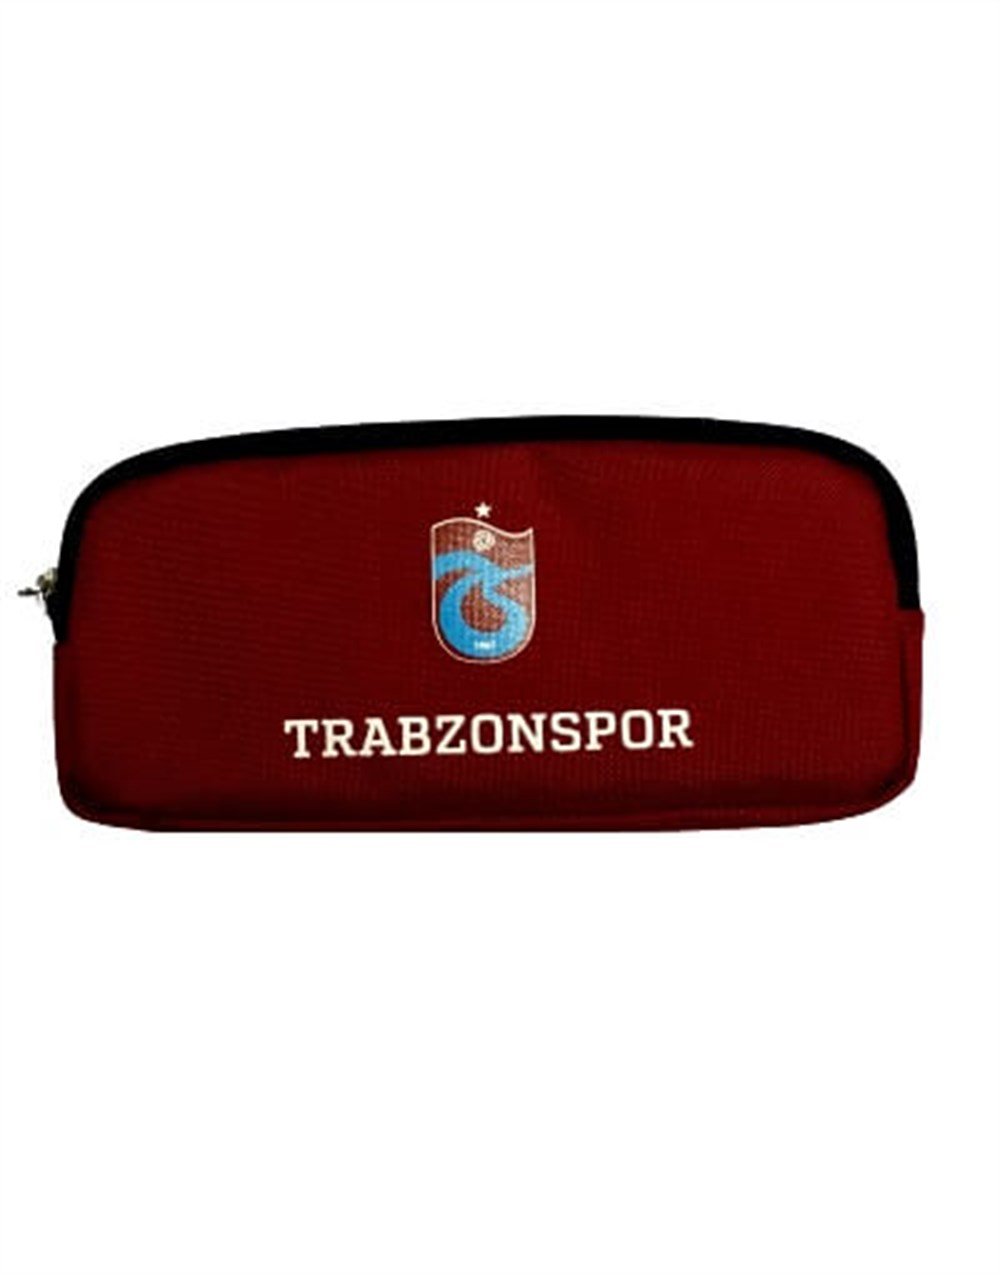 Trabzonspor Kalemlik ve Kırtasiye Ürünleri | Depo61'de